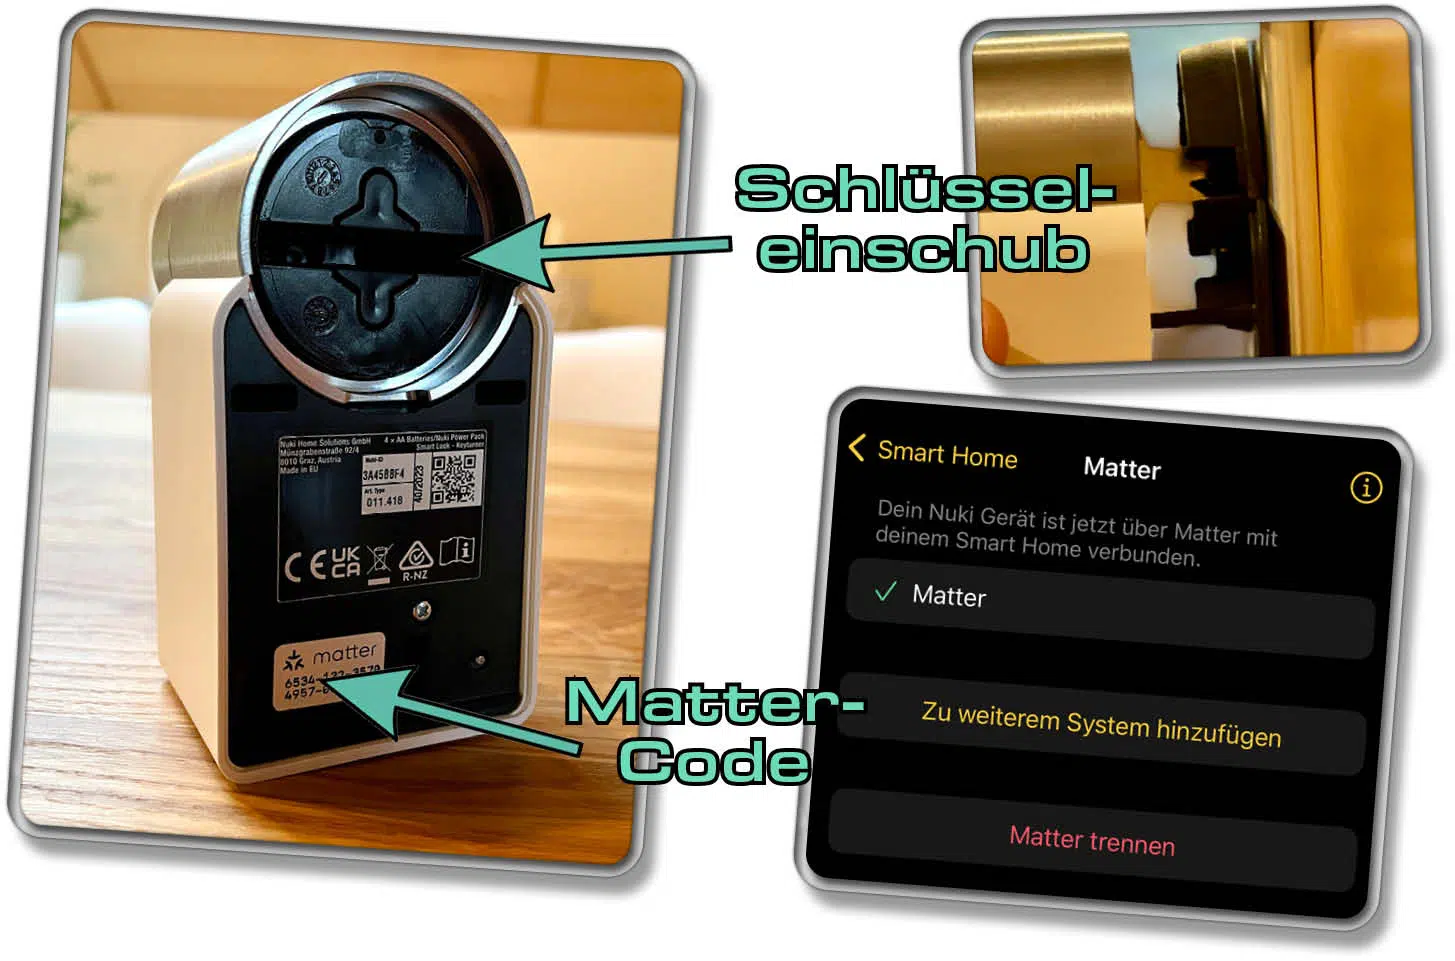 Auf der Rückseite des Nuki Smart Lock 4.0 Pro befindet sich der Matter-Code und ein Schlüsseleinschub